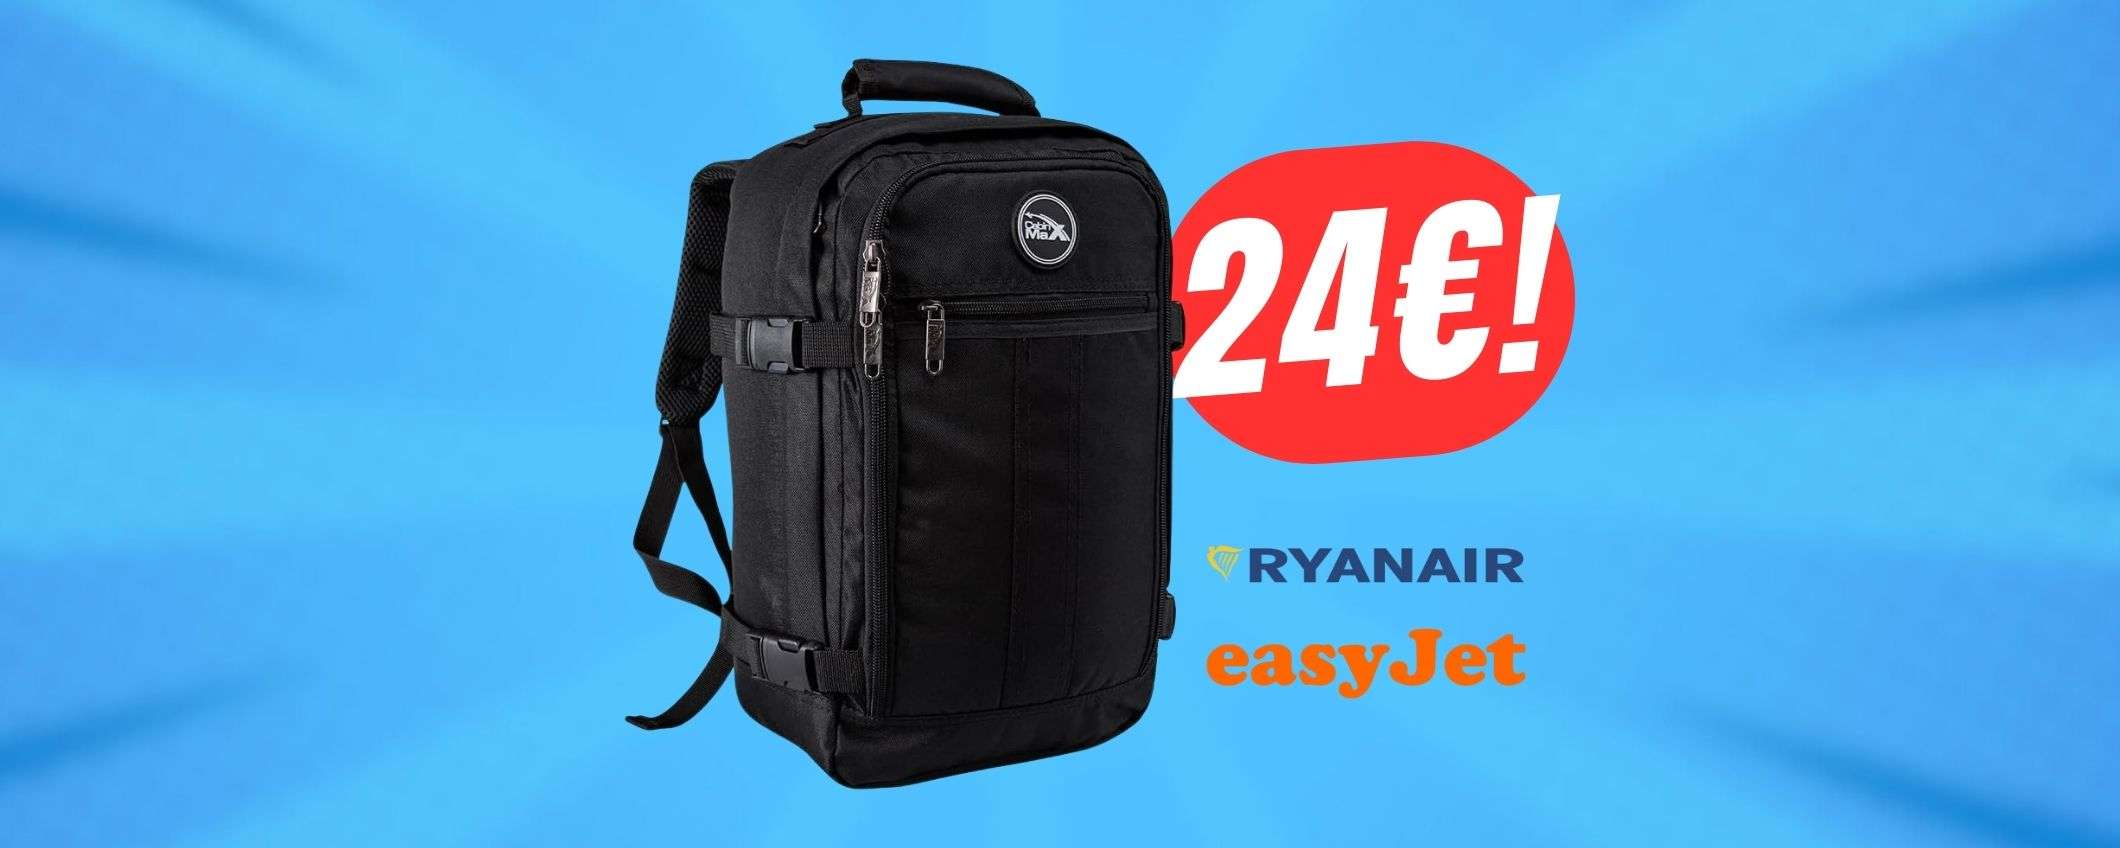 Lo ZAINO ideale per viaggiare su RYANAIR crolla a 24€ con lo sconto Amazon!